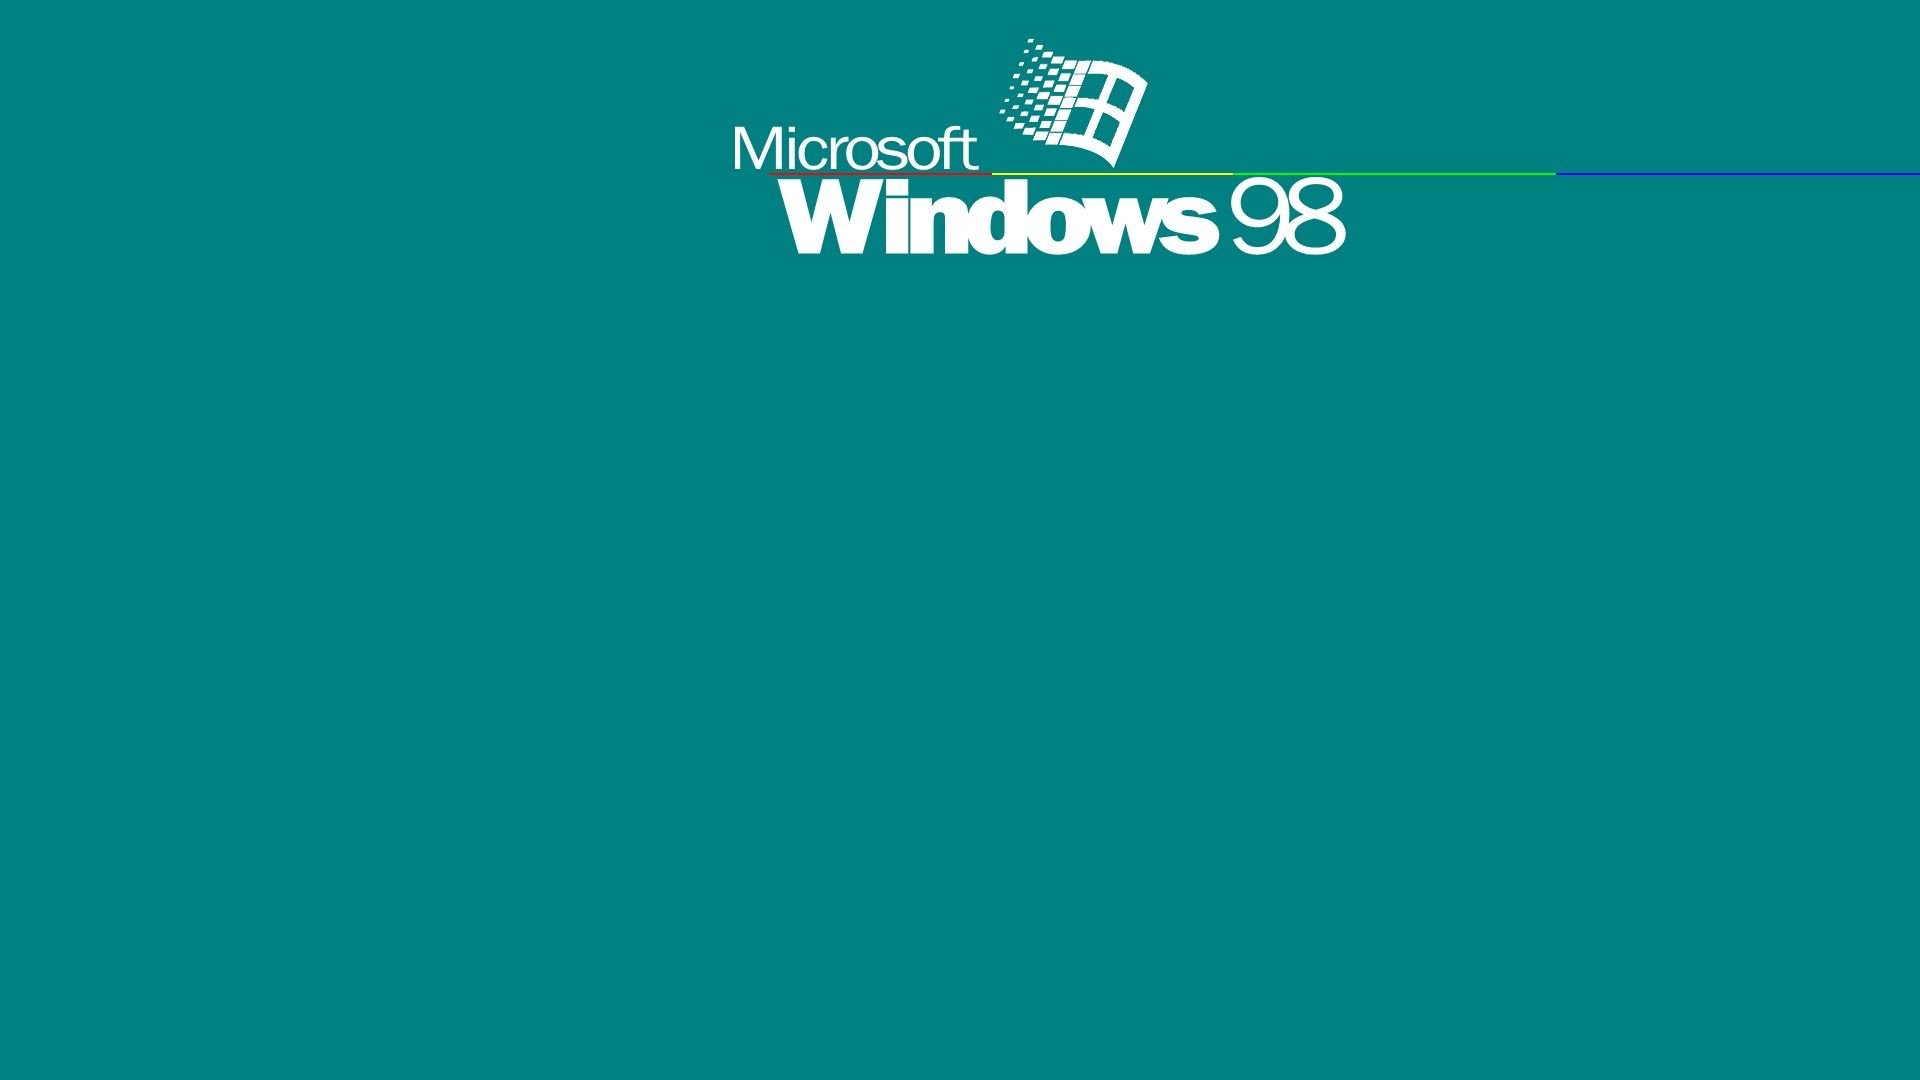 WallpaperDog cung cấp hàng ngàn hình nền đẹp với nhiều chủ đề khác nhau. Hình nền Windows 95 đang trở nên phổ biến hơn bao giờ hết và bạn có thể tìm thấy các bức ảnh đẹp ngay trên trang web này để làm mới cho màn hình máy tính của mình.